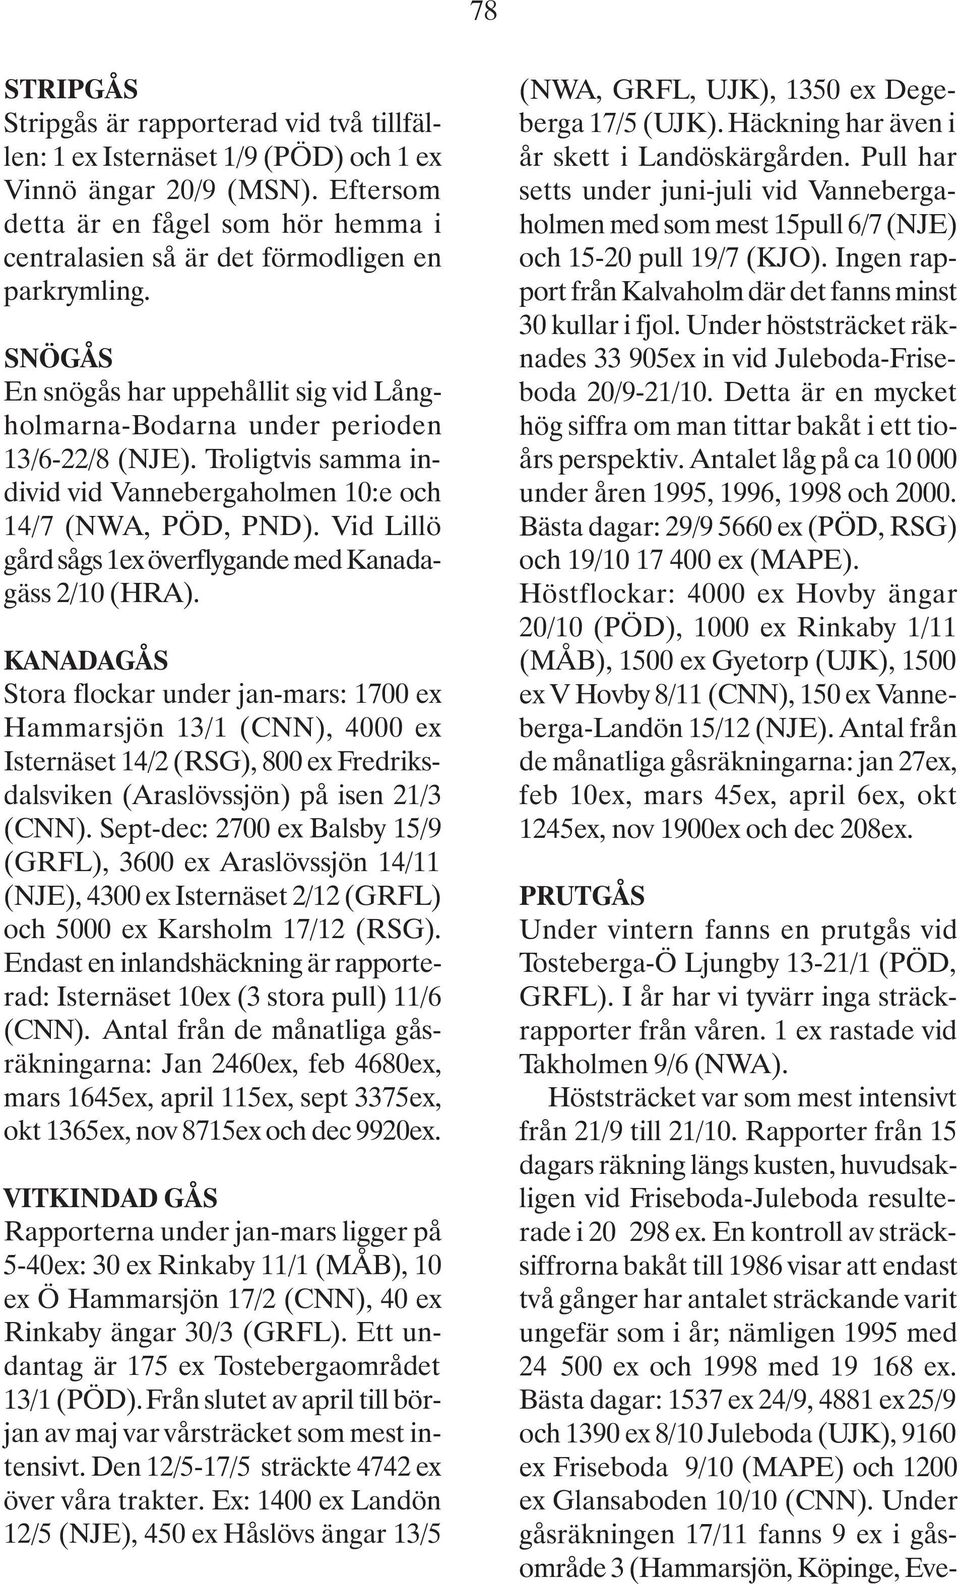 Troligtvis samma individ vid Vannebergaholmen 10:e och 14/7 (NWA, PÖD, PND). Vid Lillö gård sågs 1ex överflygande med Kanadagäss 2/10 (HRA).